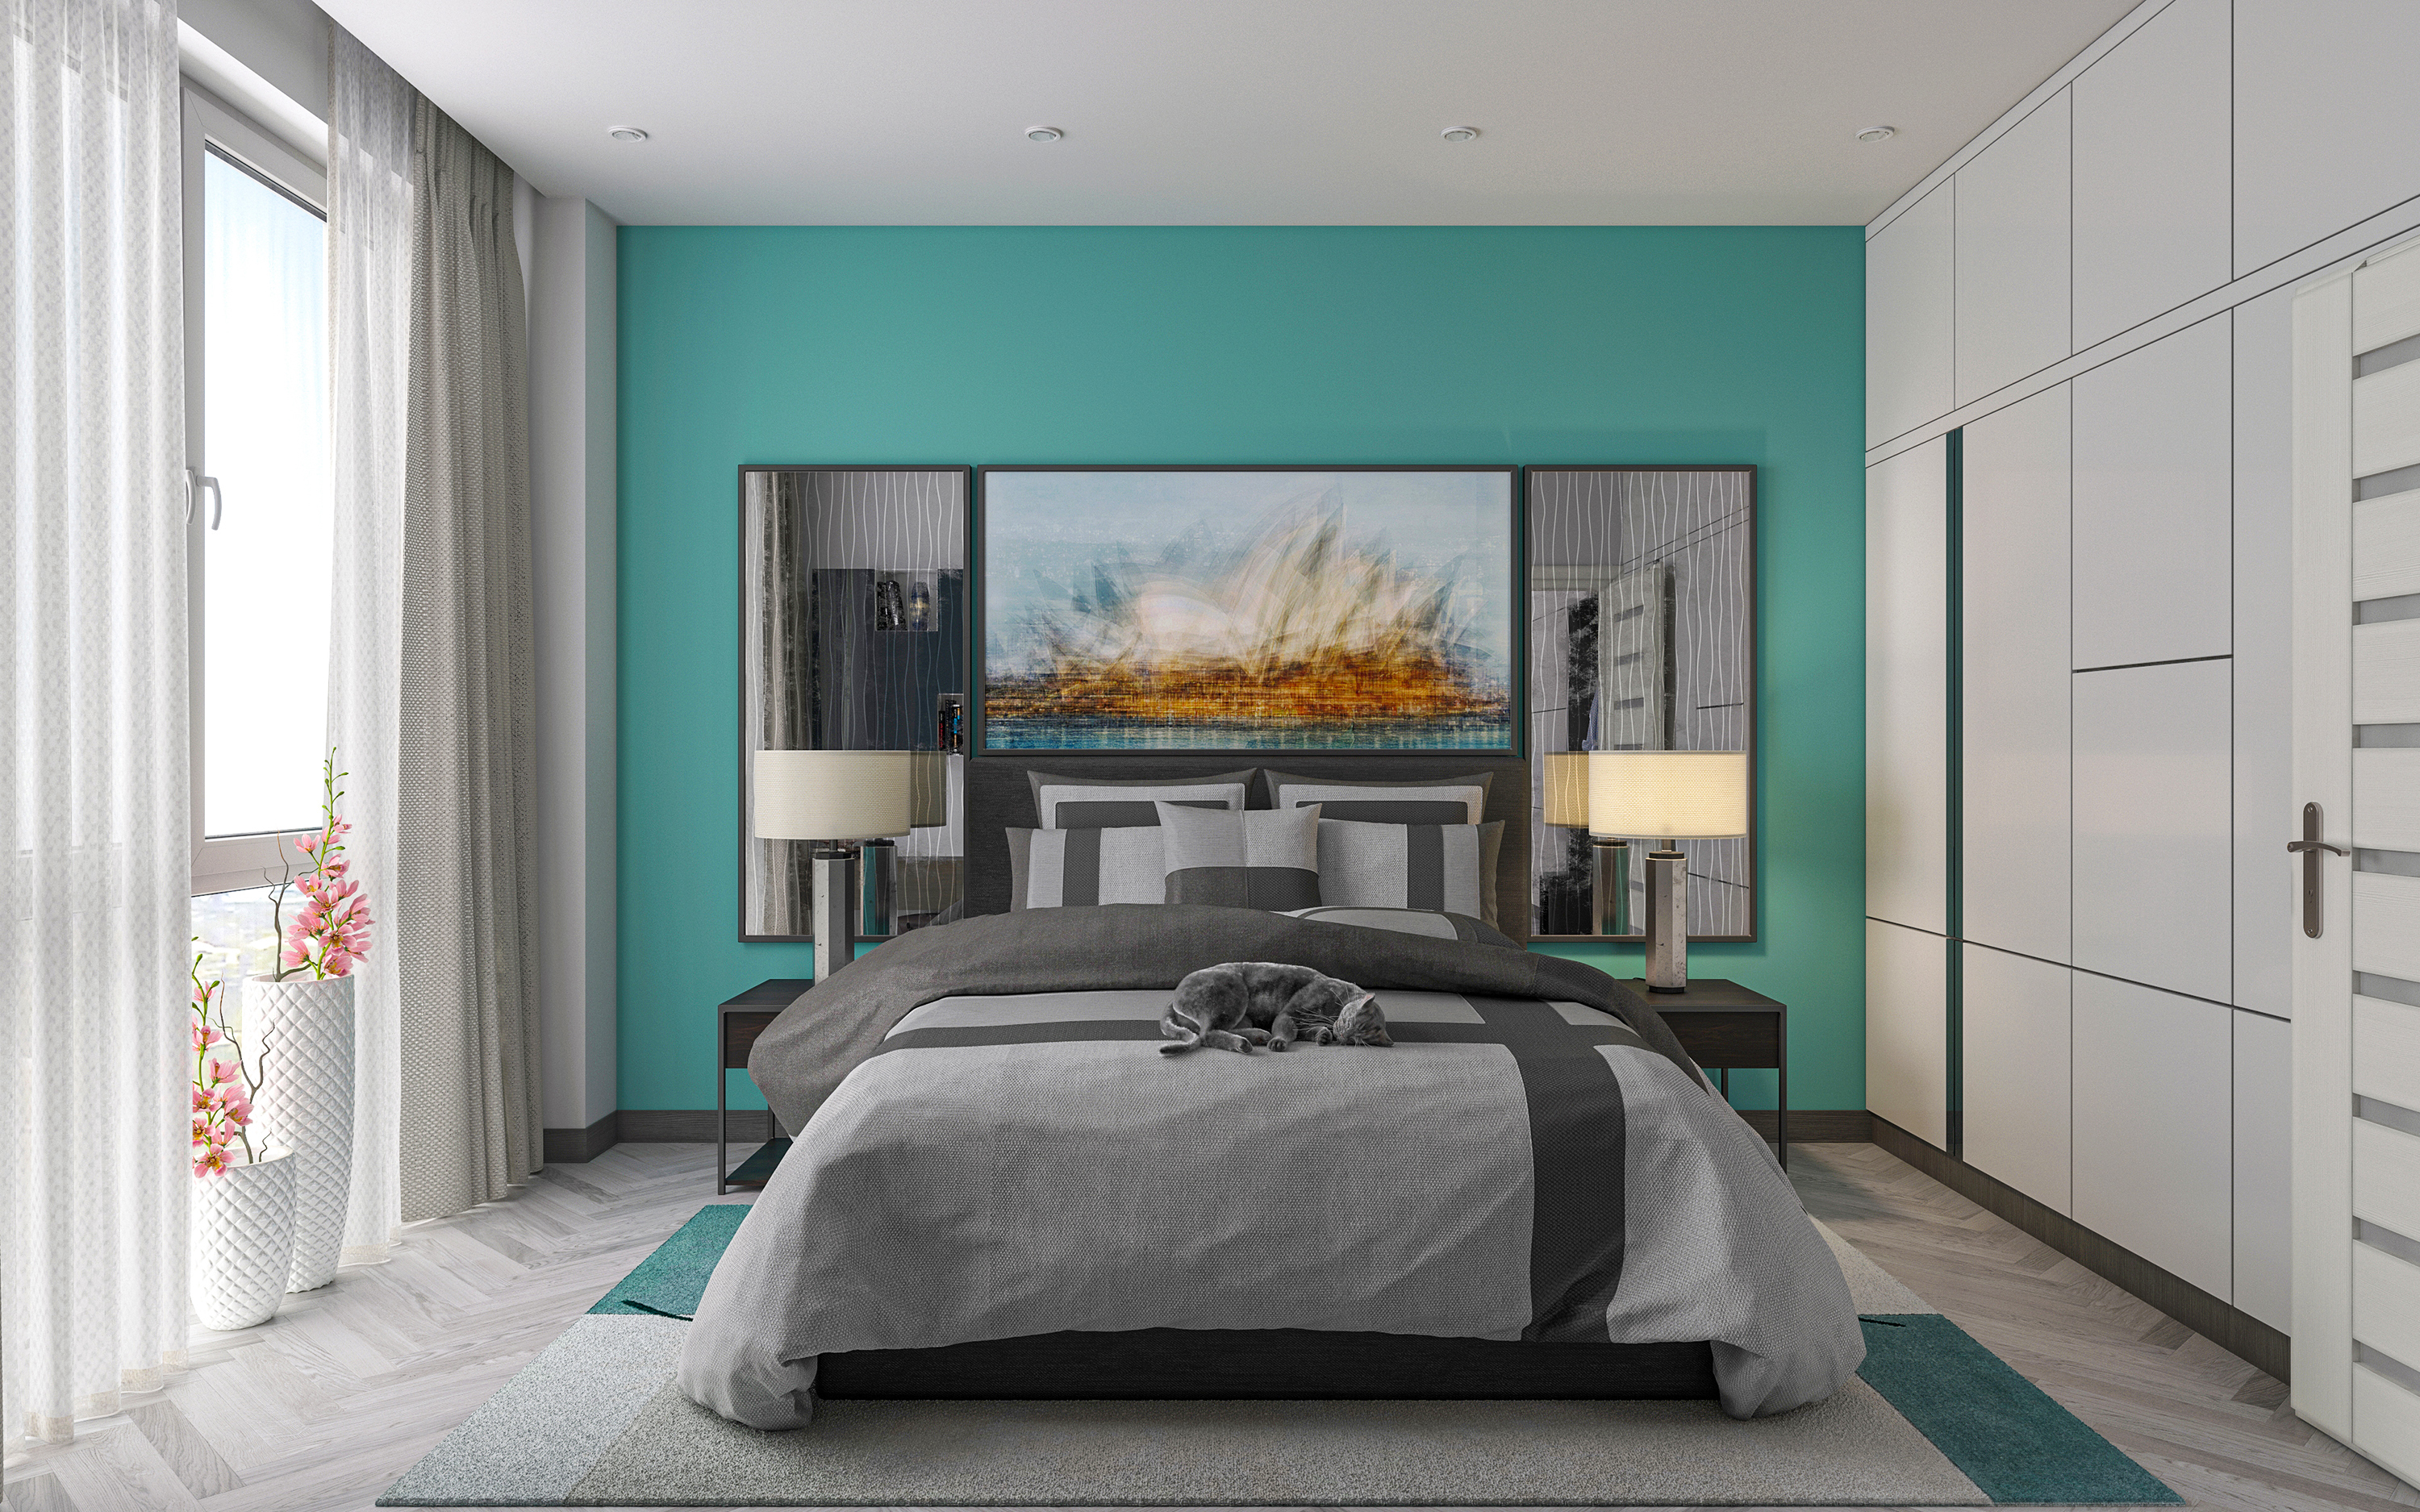 Appartement une chambre S66 dans 3d max corona render image